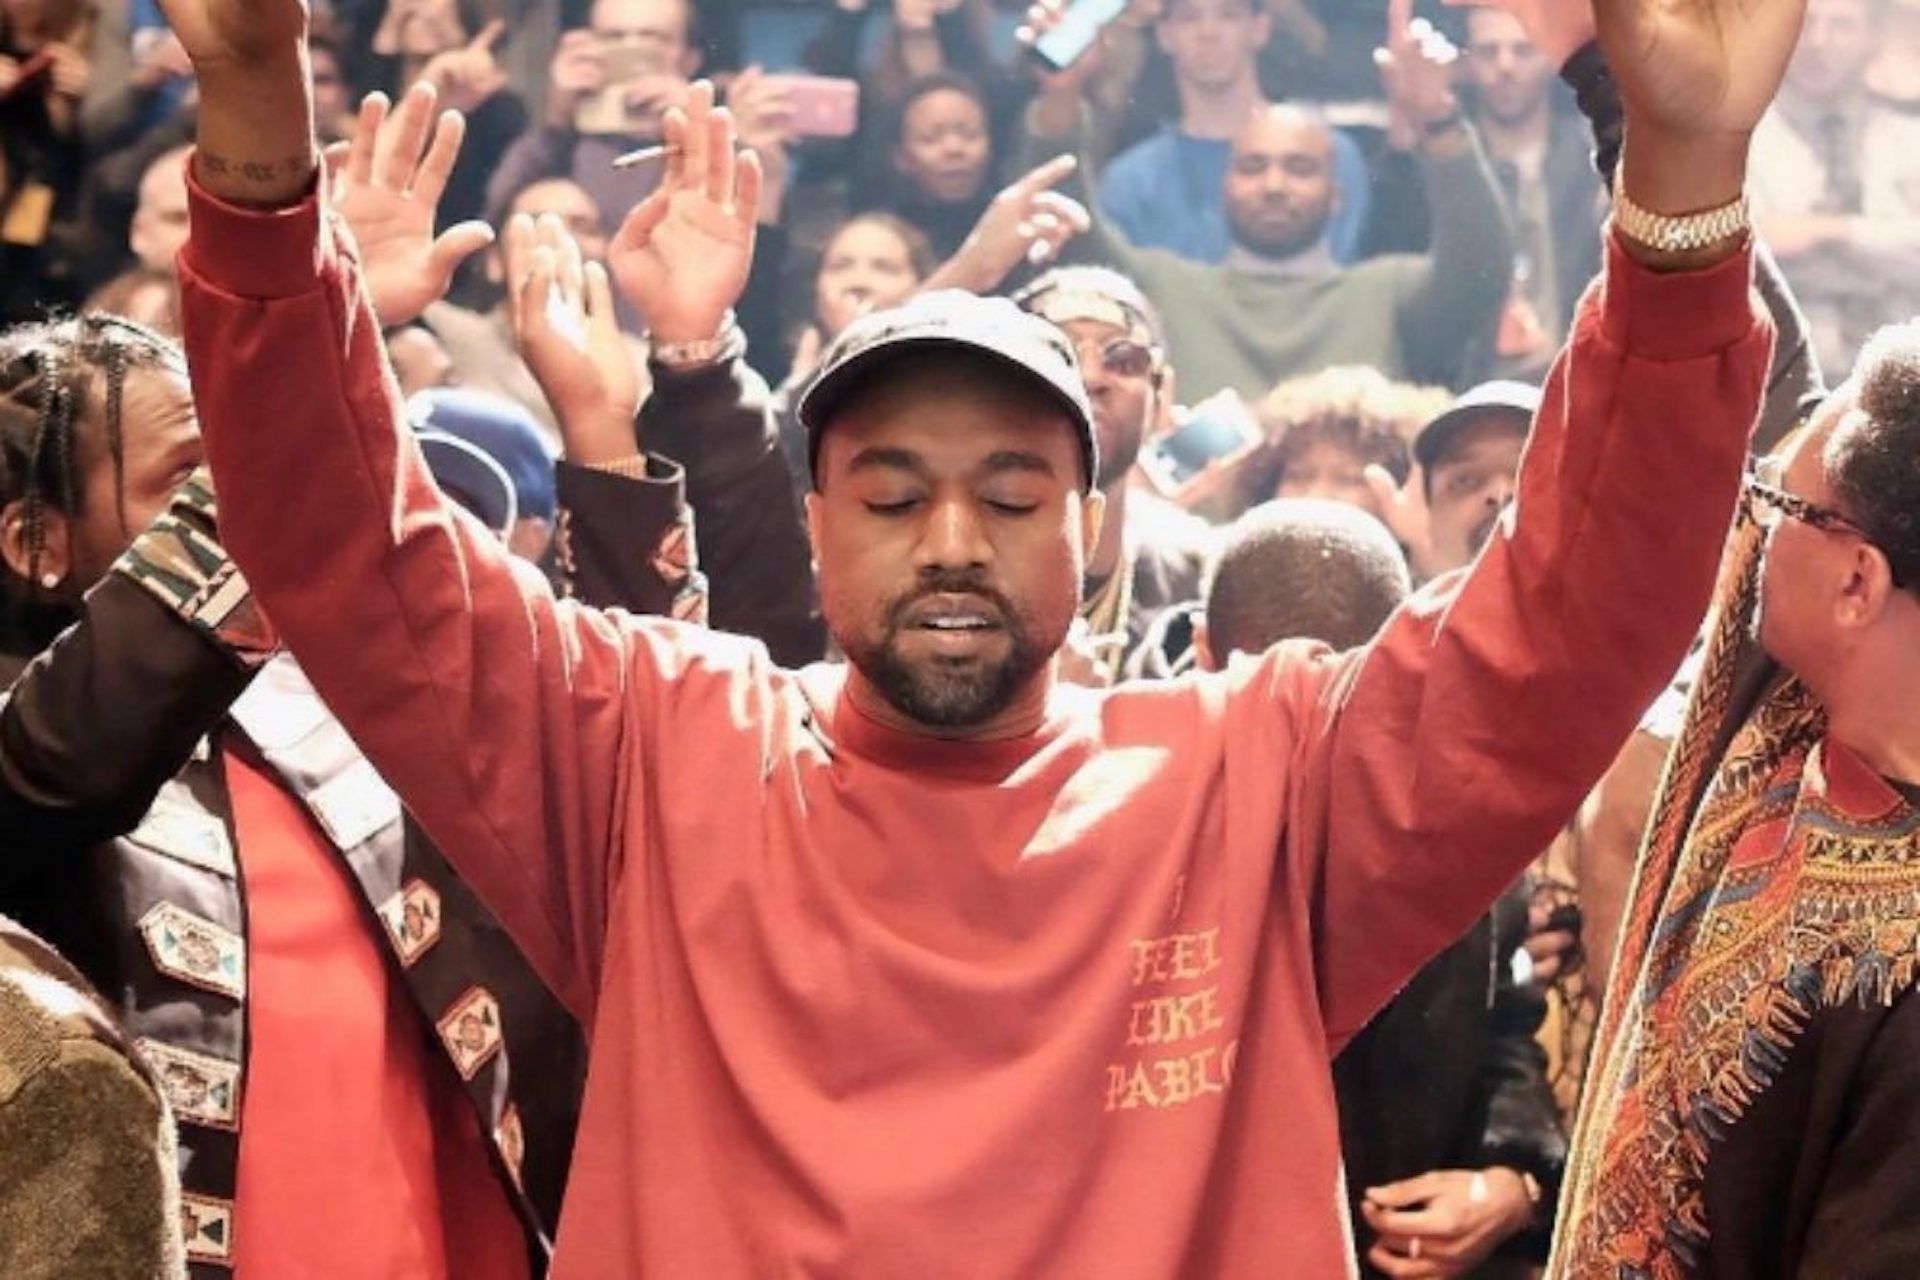 “Jesus é Rei”: Kanye West lançará álbum com músicas gospel